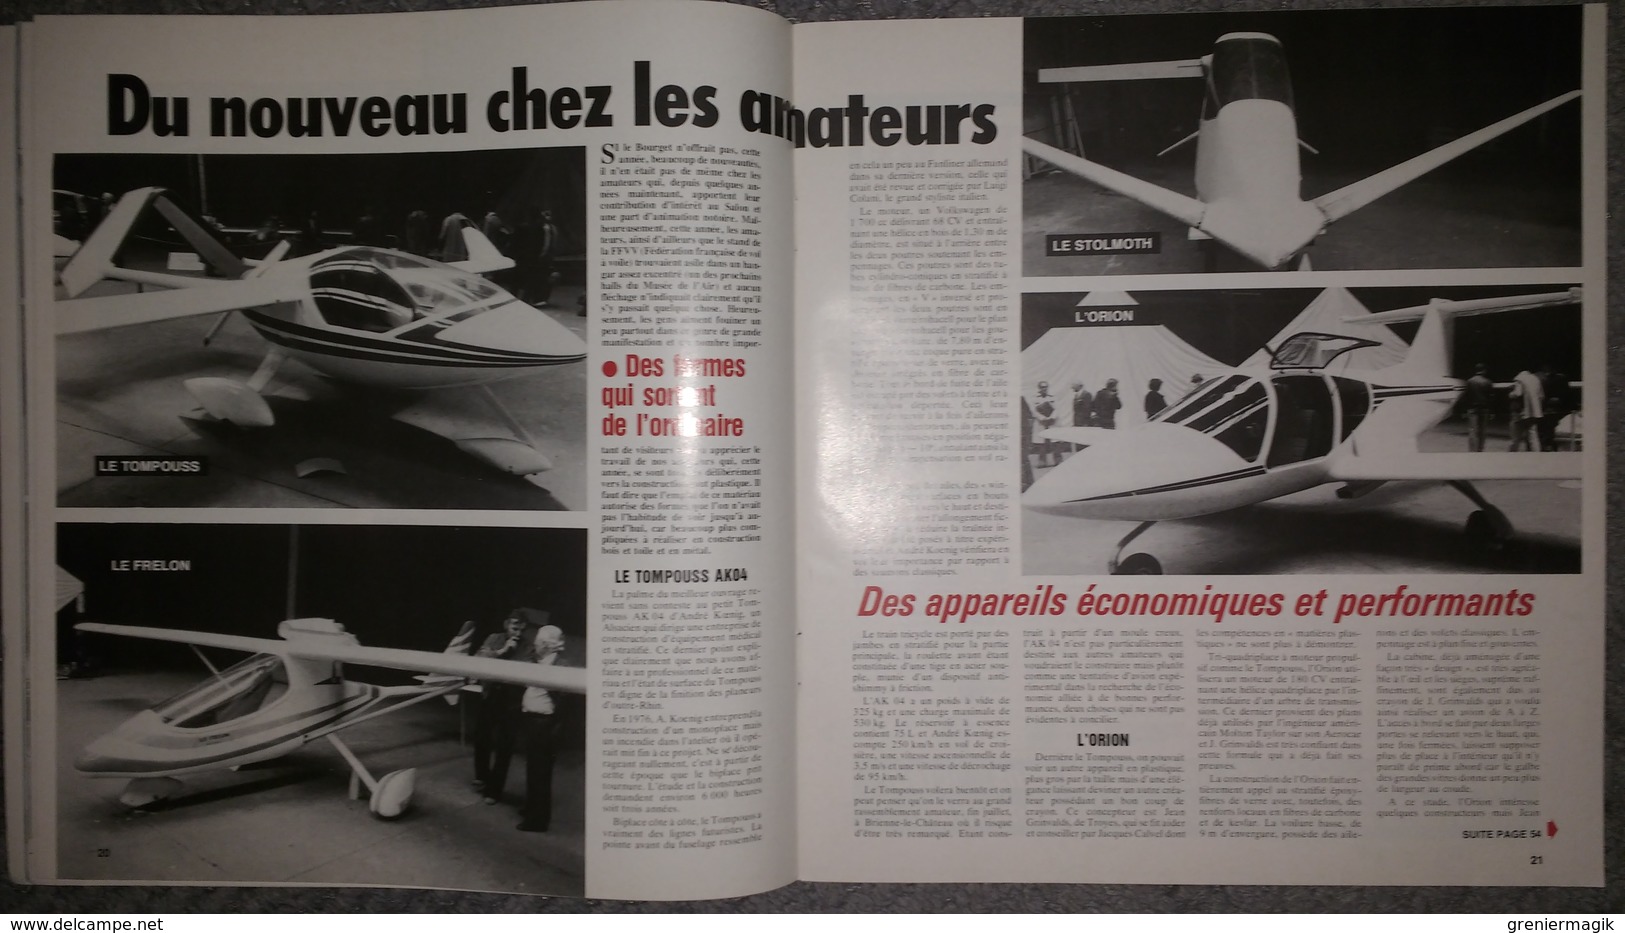 Revue Aviation 2000 n°56 juillet 1979 Mirage 4 - DC10 - Musée de l'air du Bourget - Ferté-Alais - Aerostar 601